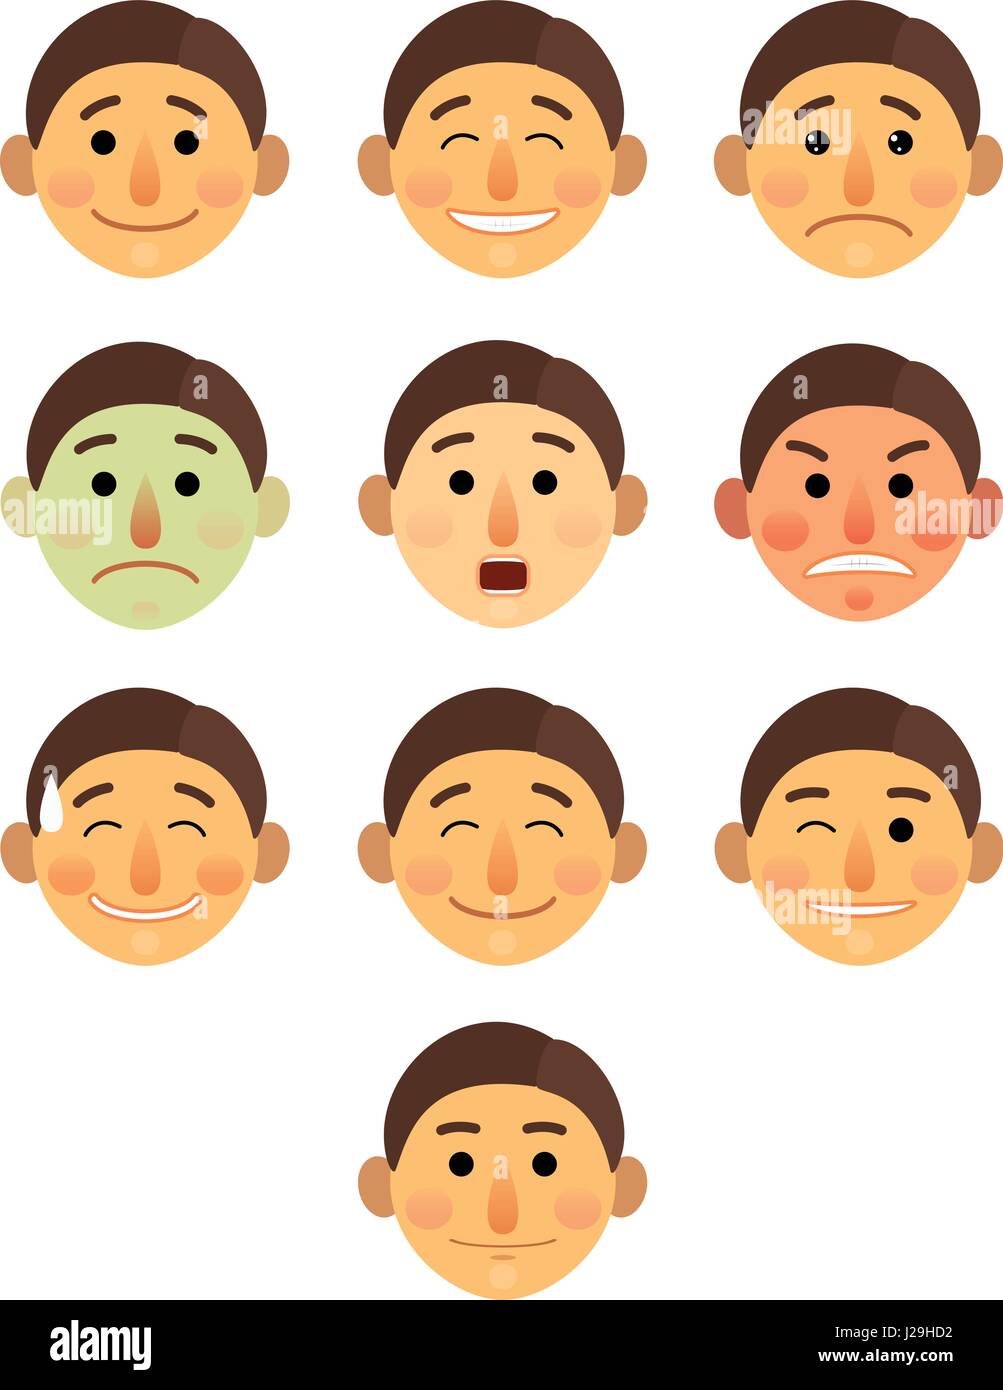 Junge oder Mann anderes Gesicht Emotionen Sammlung cartoon flach - Emoji Emoticons Symbolsatz Vektor Illustration. Stehen Sie auf einem weißen Hintergrund isoliert. Stock Vektor